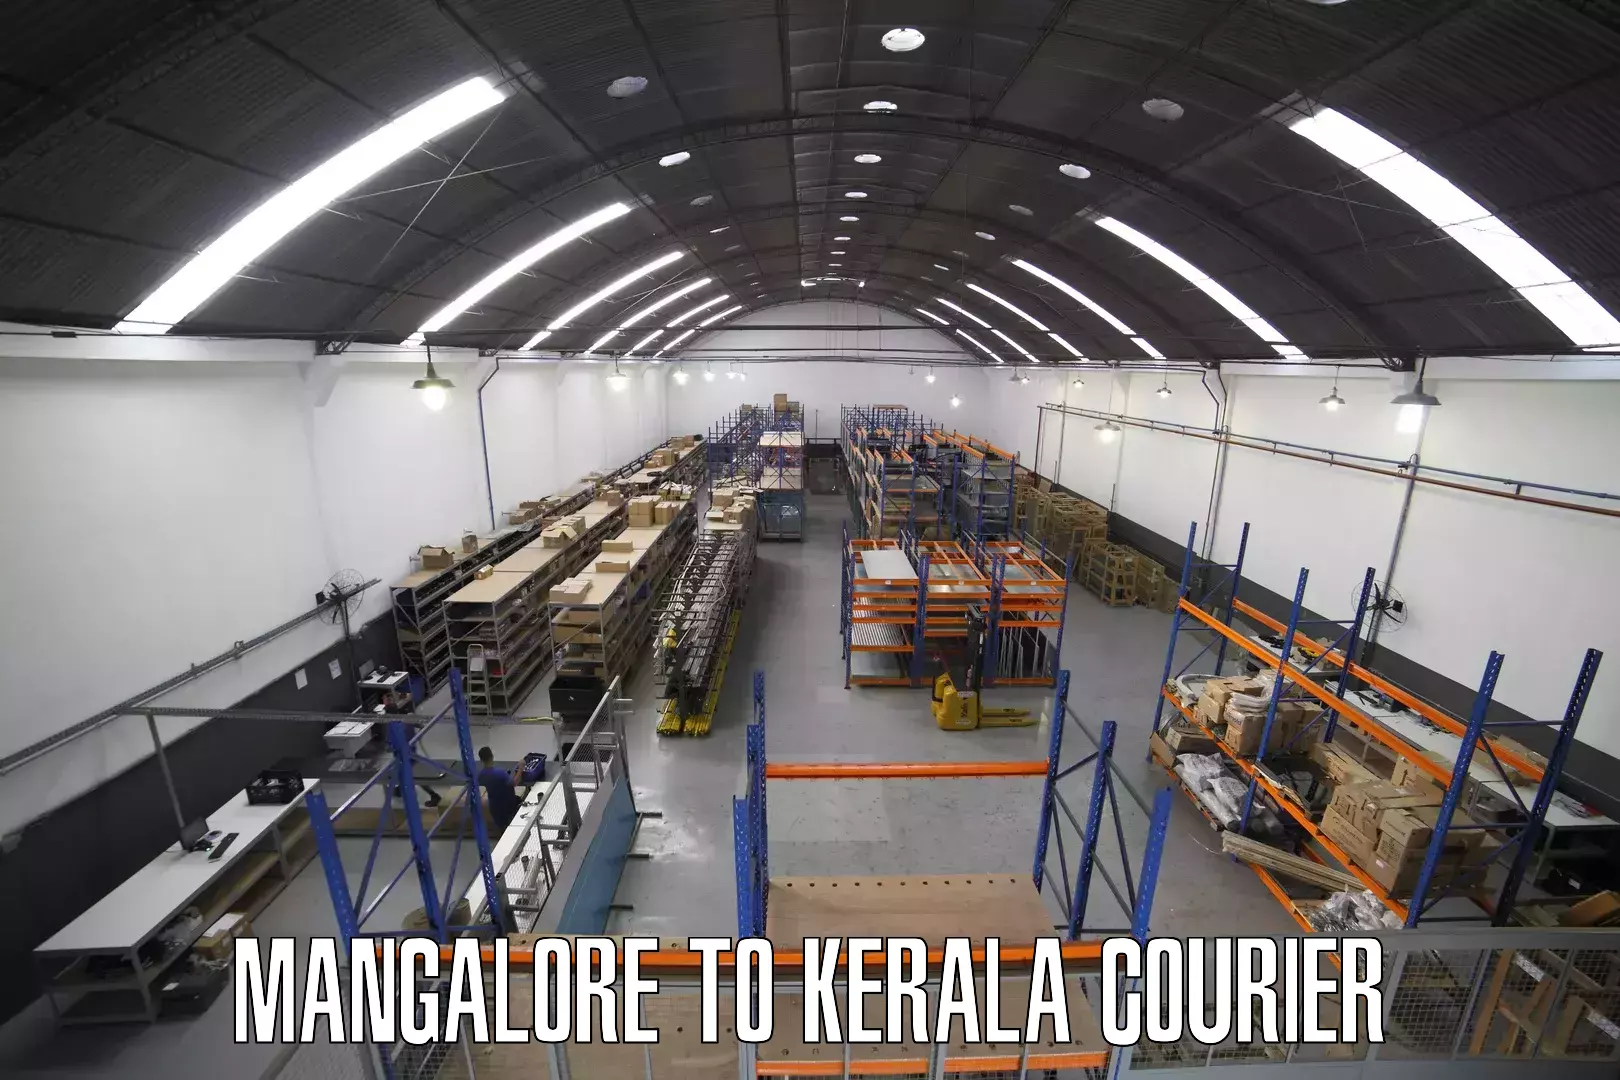 Express mail solutions Mangalore to Kuttikol